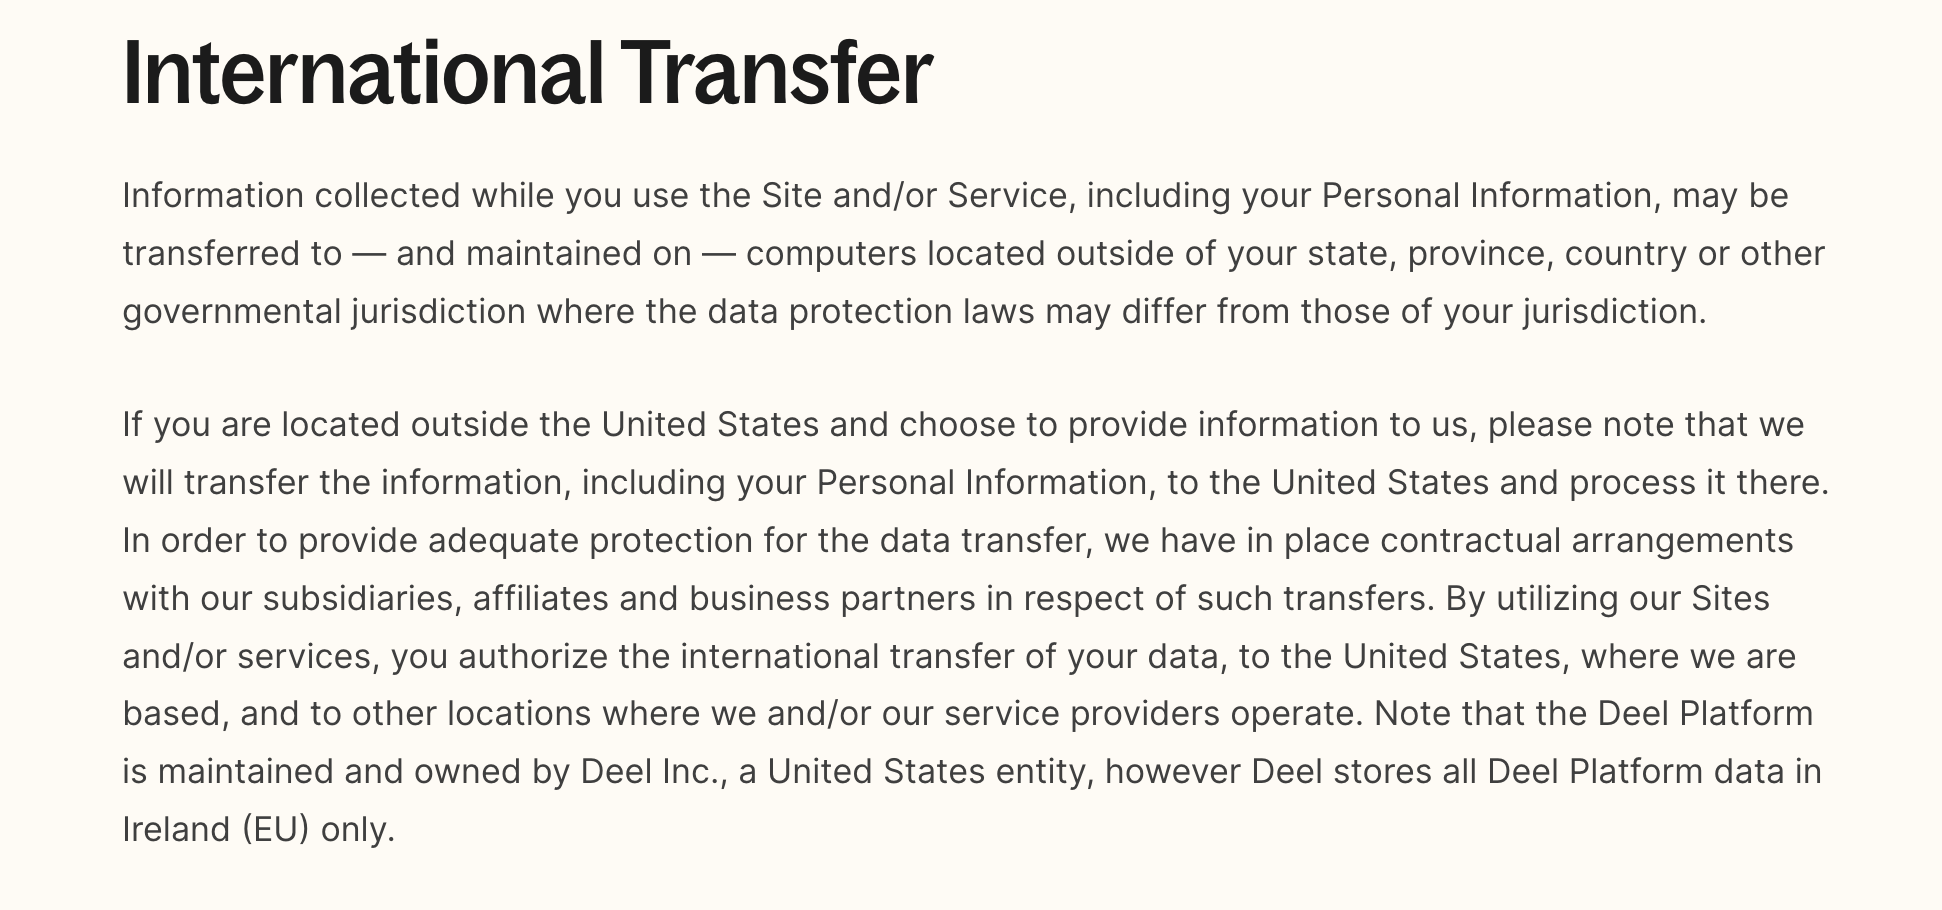 International transfer - privacy policy